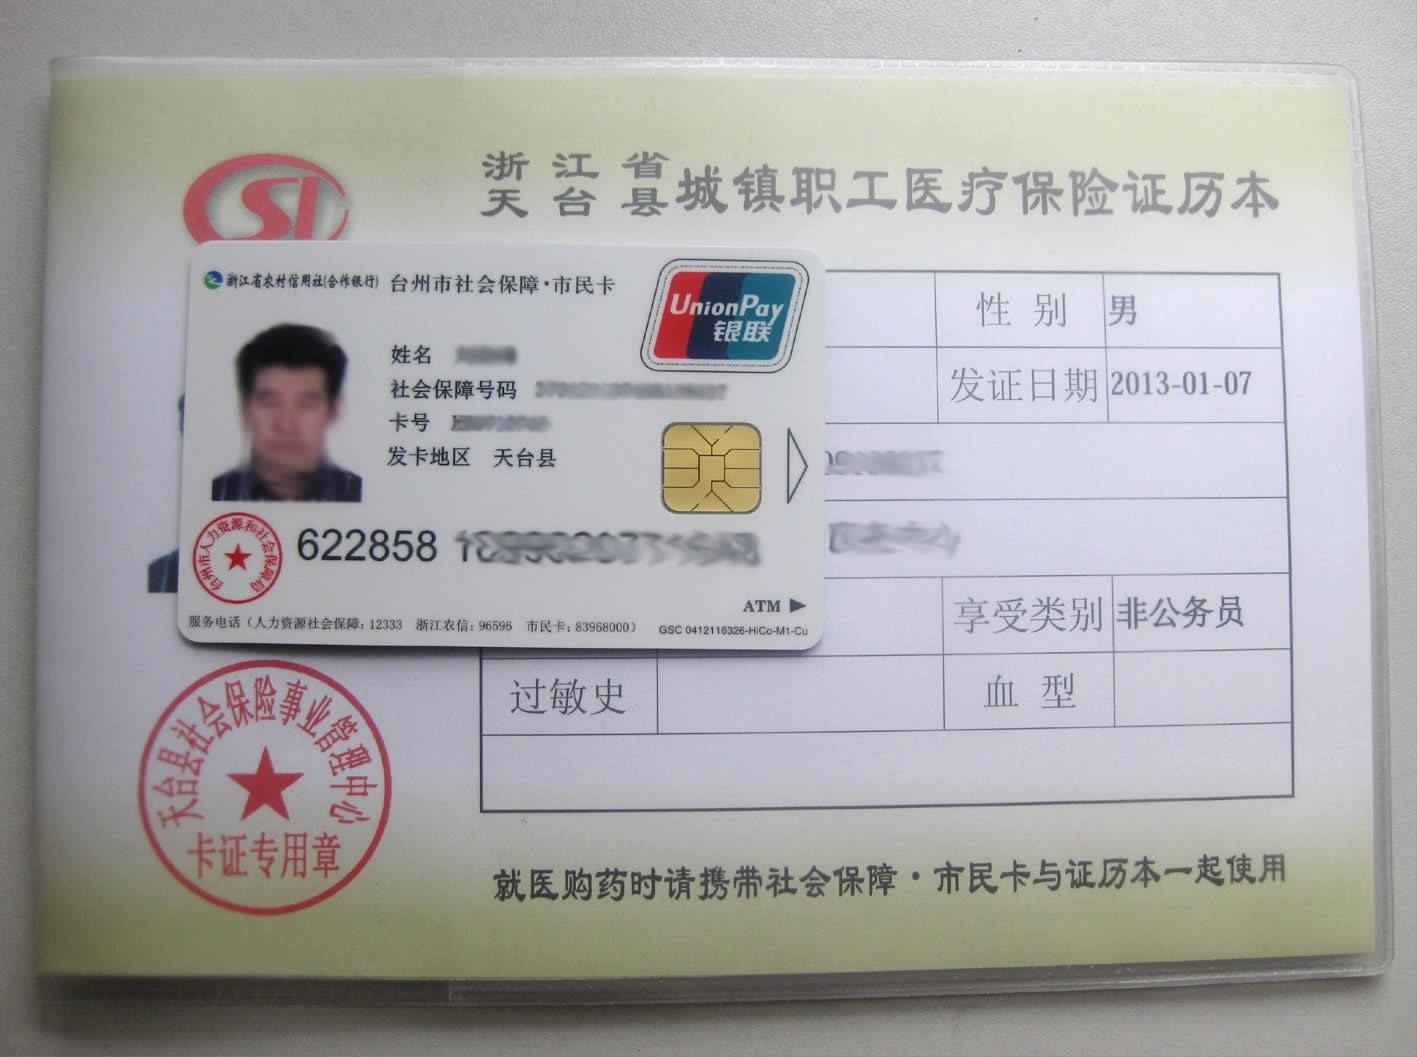 "社会保障·市民卡"和"天台县城镇职工医疗保险专用证历本"正反面.